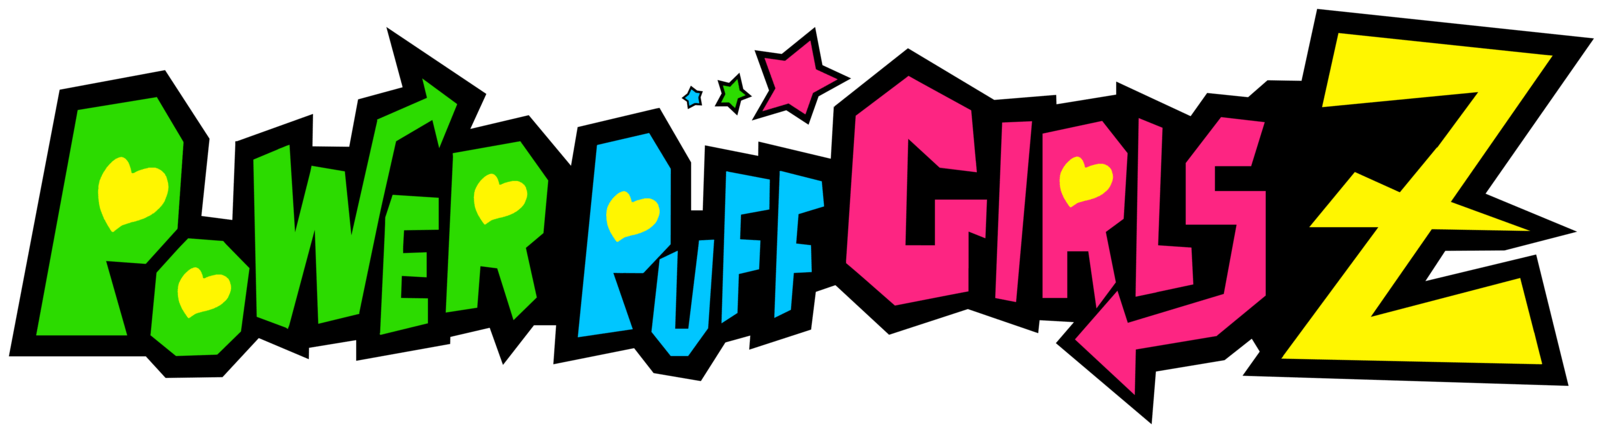 Powerpuff Girls Logo - Powerpuff Girls Z | Logopedia | FANDOM powered by Wikia